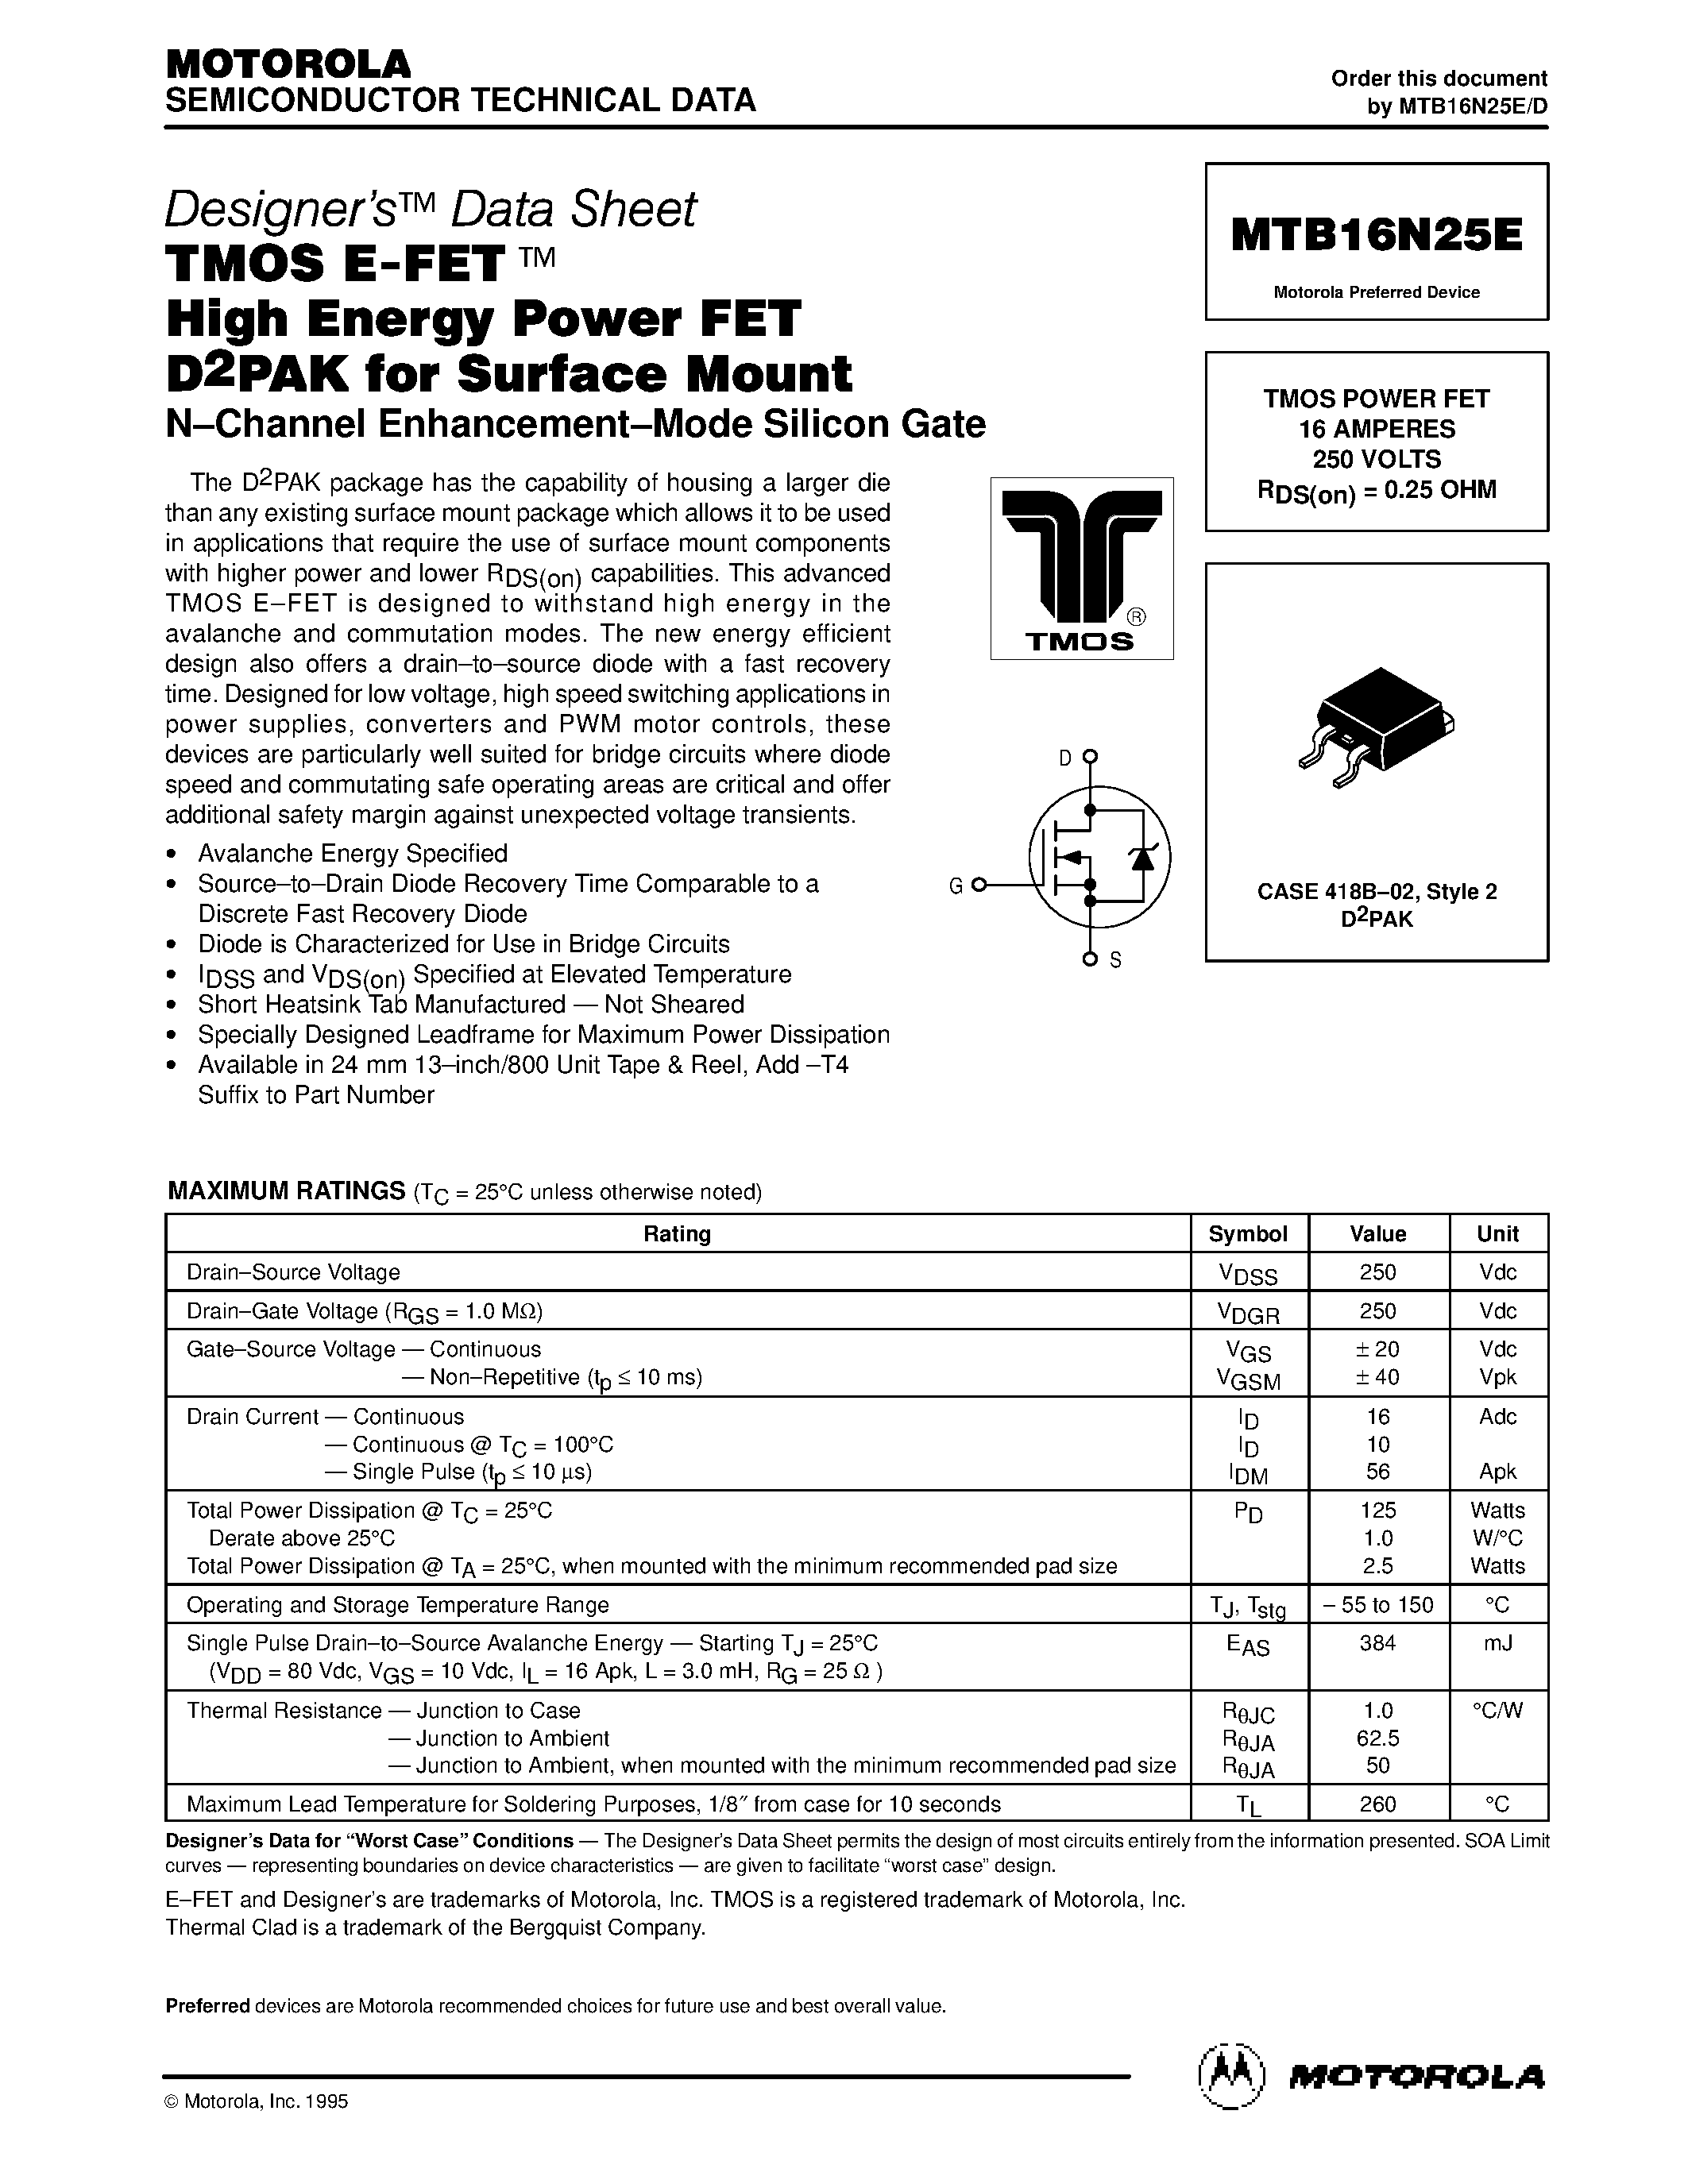 Даташит MTB16N25E - TMOS POWER FET 16 AMPERES страница 1